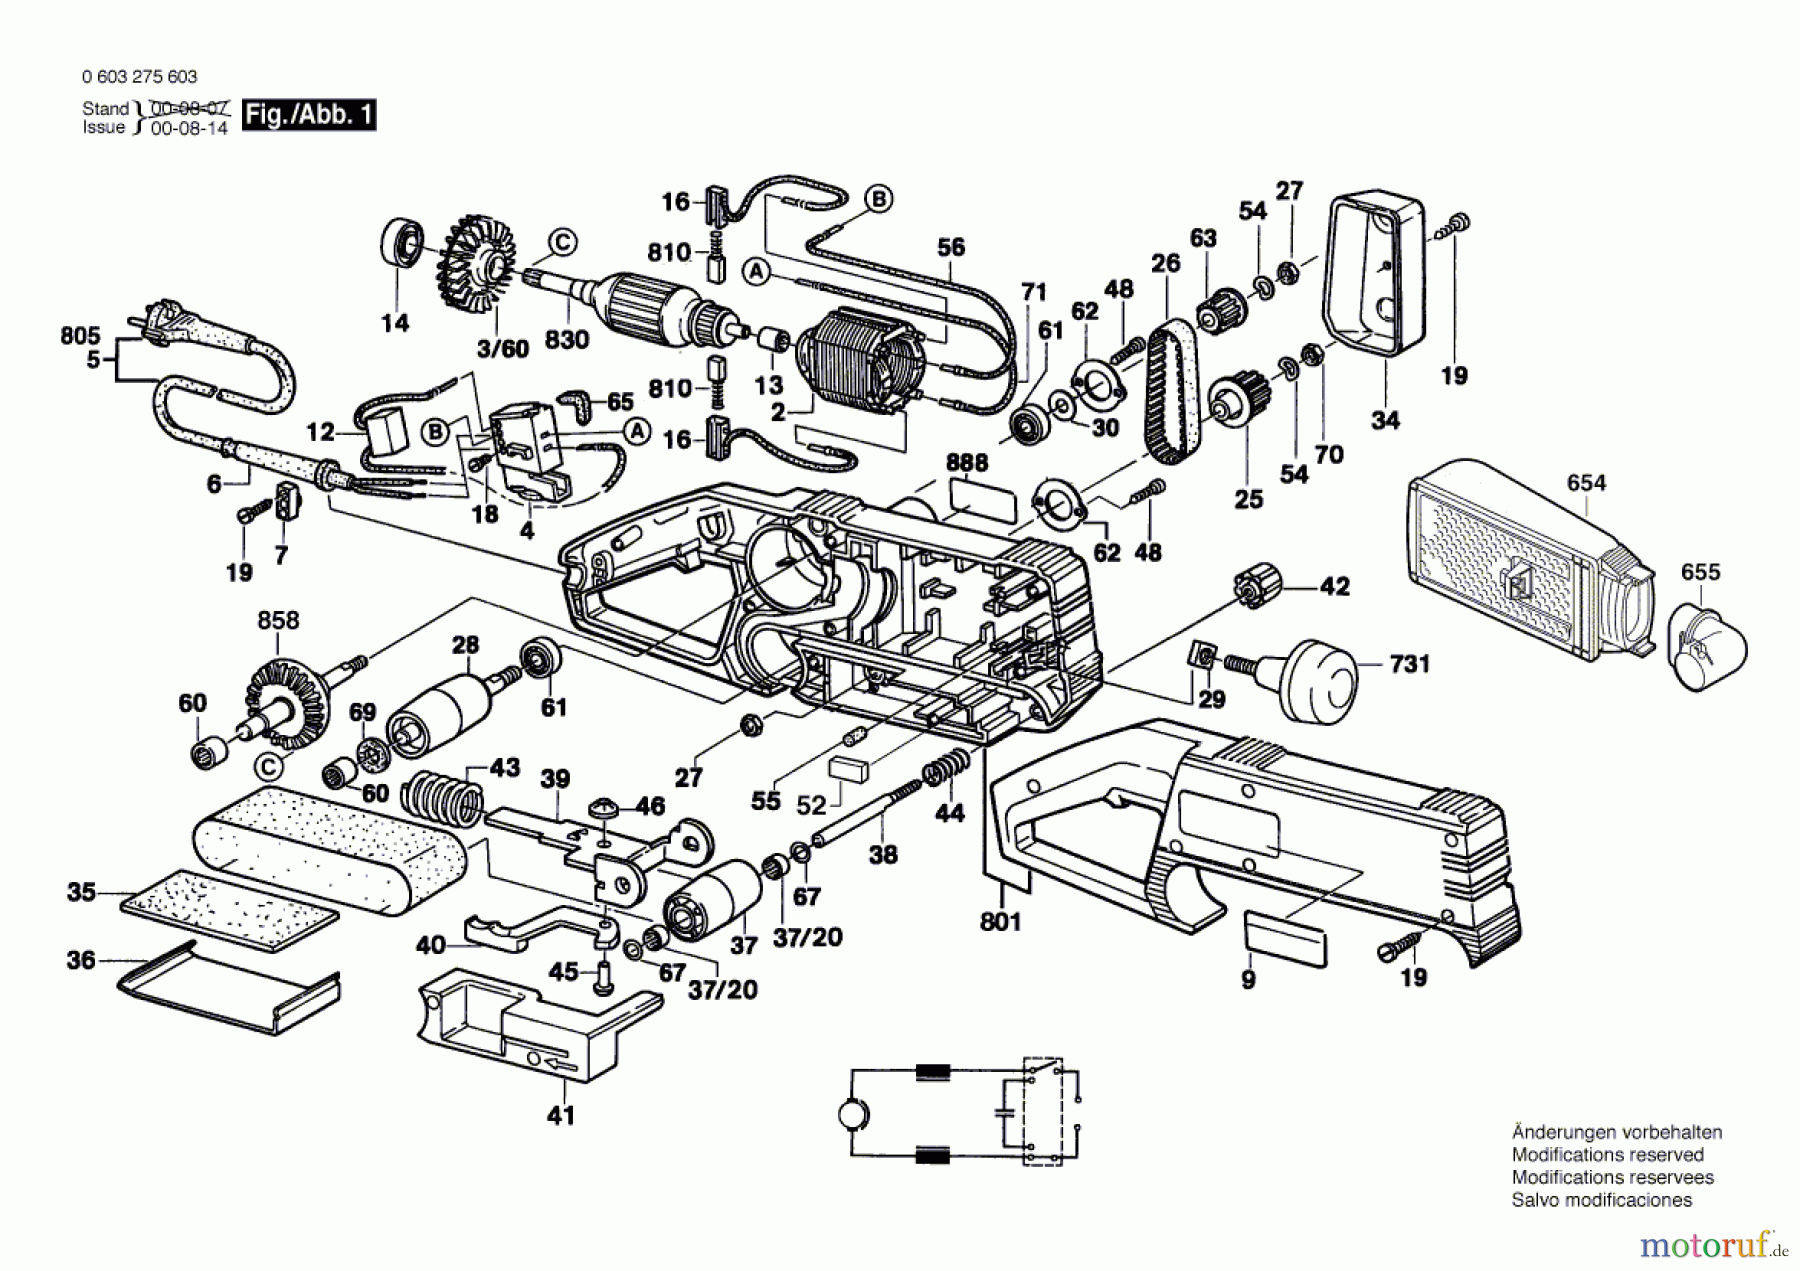  Bosch Werkzeug Bandschleifer PBS 60 AE Seite 1